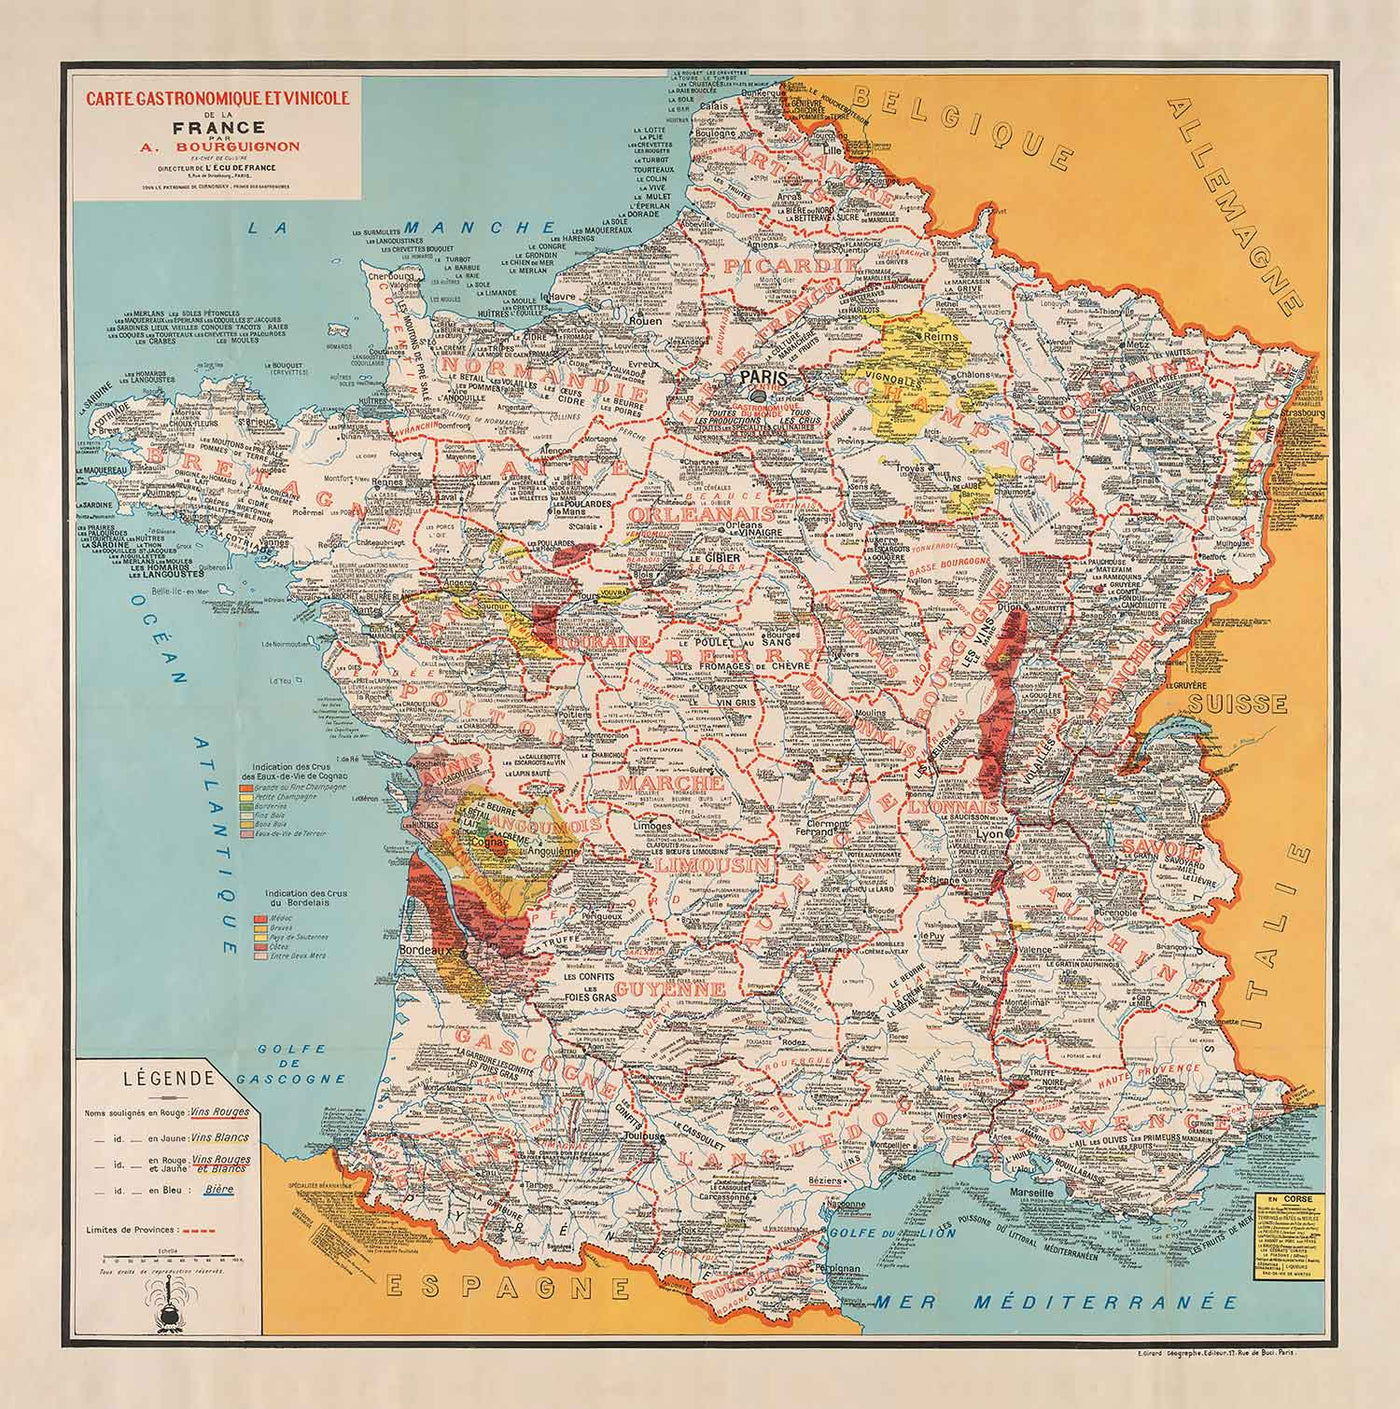 Alte gastronomische Karte von Frankreich im Jahr 1932 von Alain Bourguignon - Französische Lebensmittel, Michelin, Champagner, Bordeaux, Butter, Käse, etc.